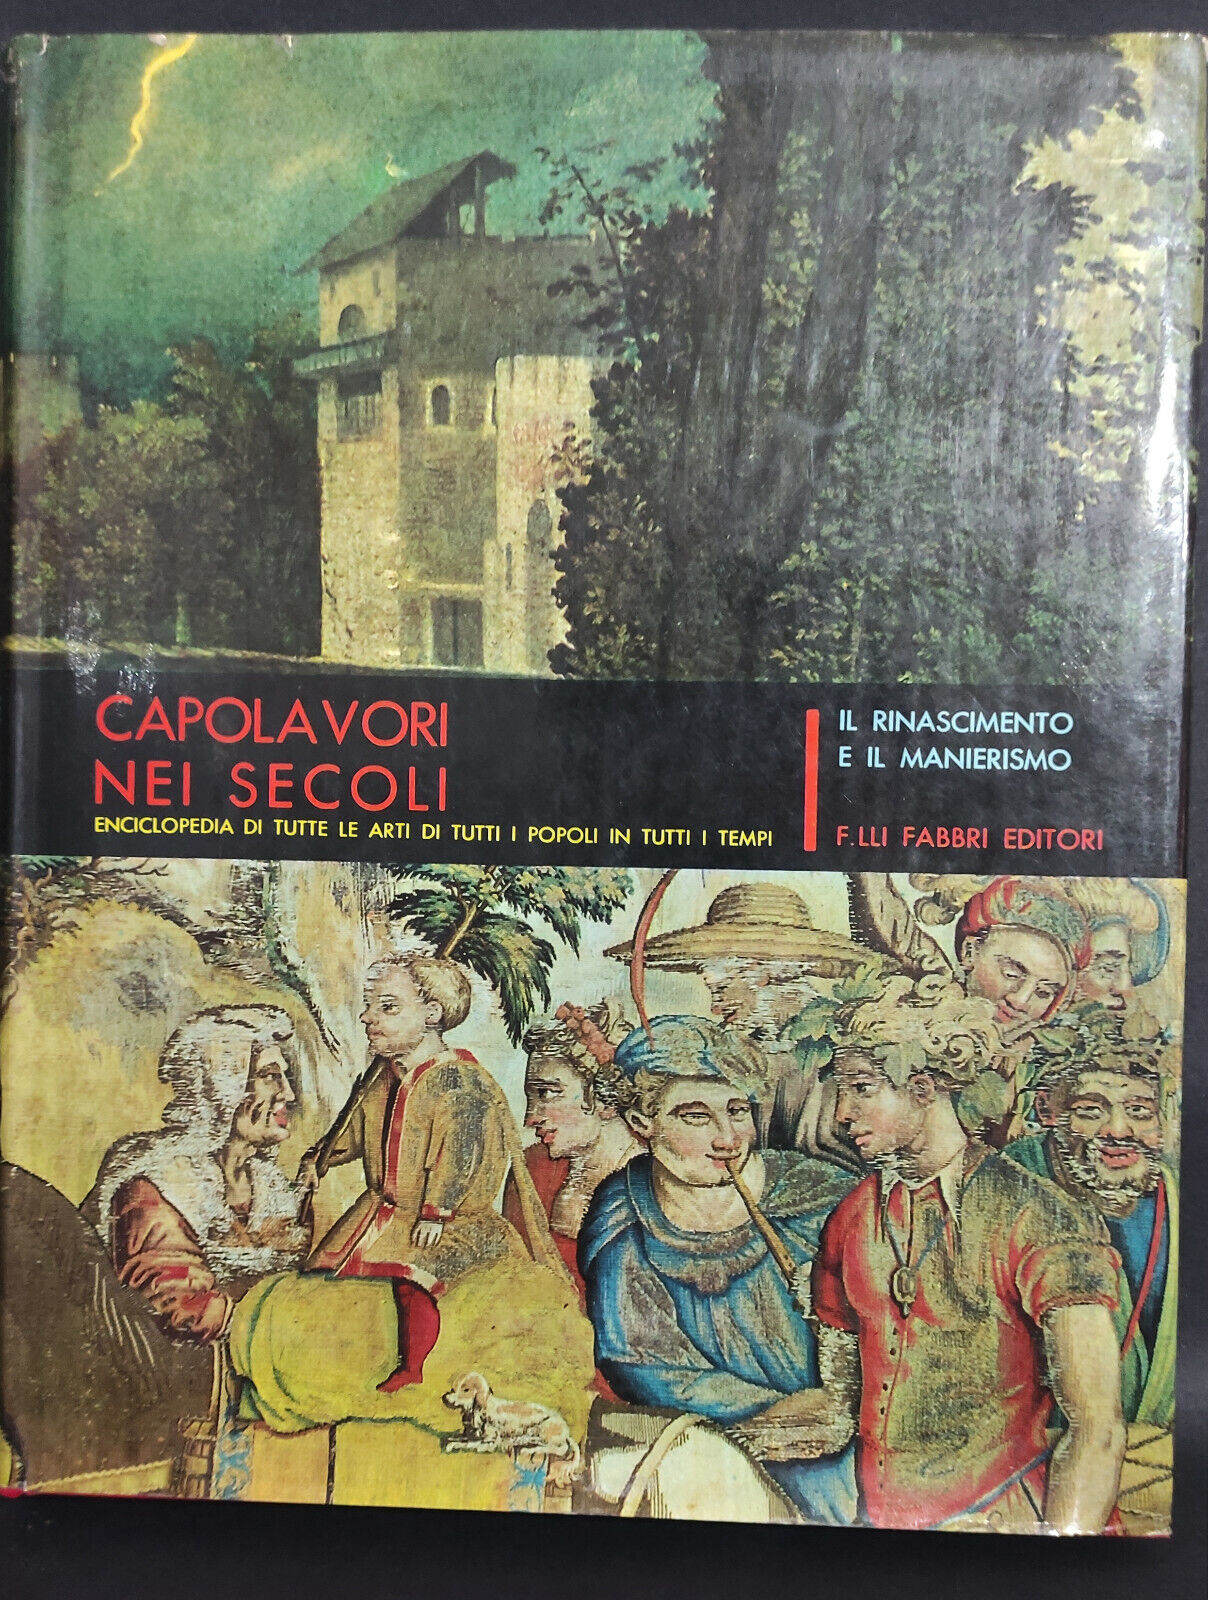 Capolavori nei secoli - Vol. VI   di F.lli Fabbri Editore,  1963